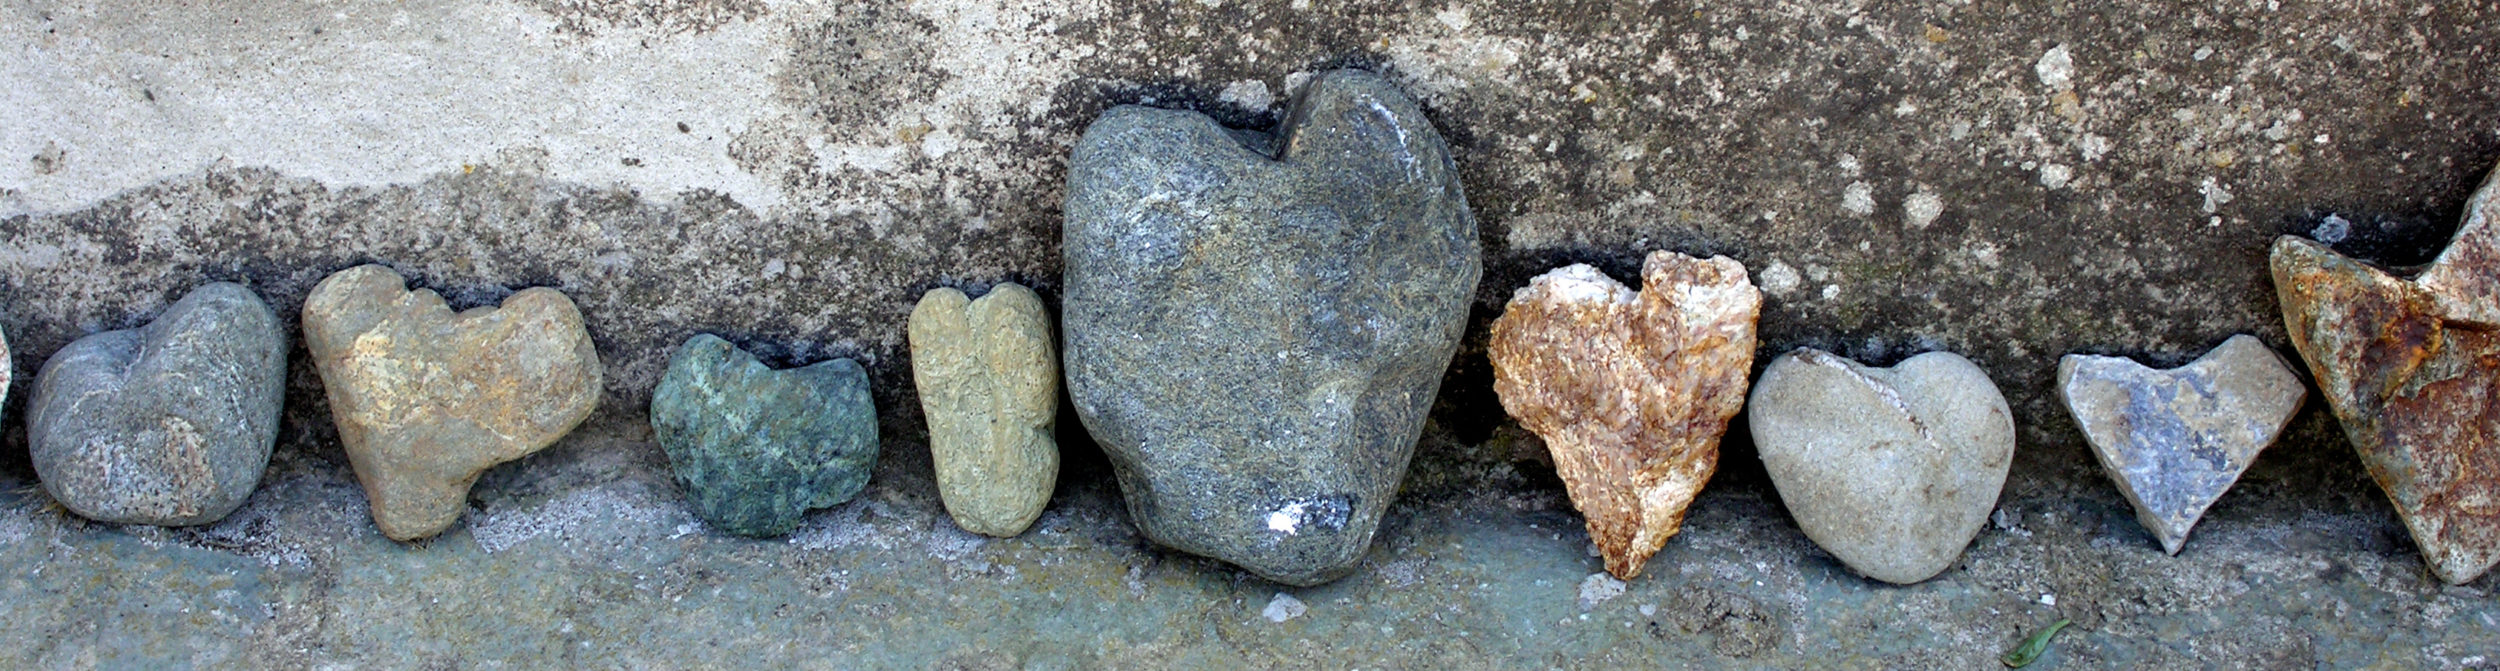 Ein Herz für Stein und seine Bearbeiter! Wir setzen auf fairen Handel und rücksichtsvollen Umgang mit der Natur, die uns ihre Schätze schenkt.